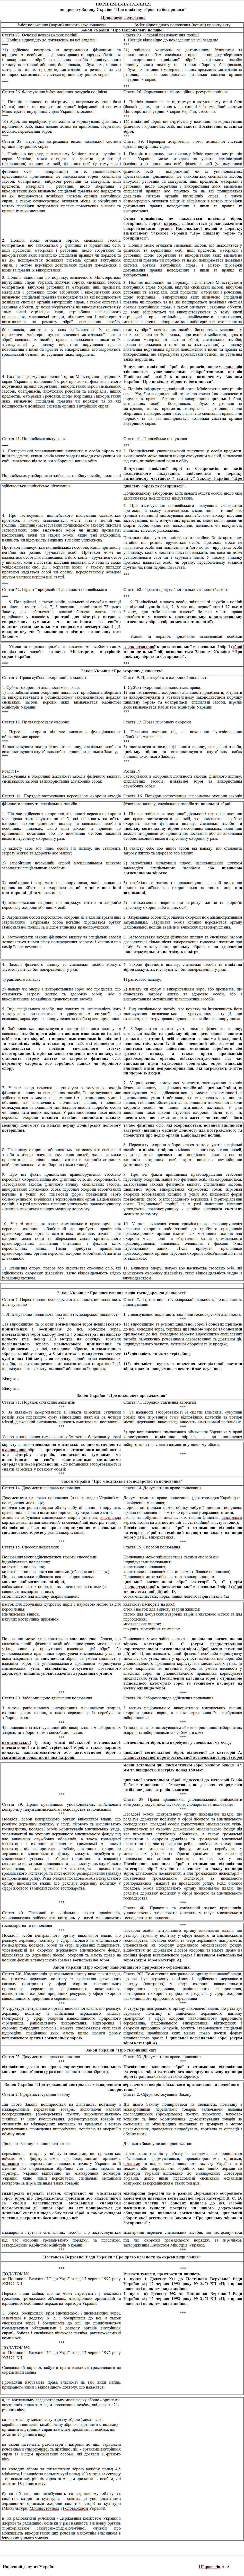 Порівняльна таблиця до проекту Закону України “Про цивільну зброю та боєприпаси” 